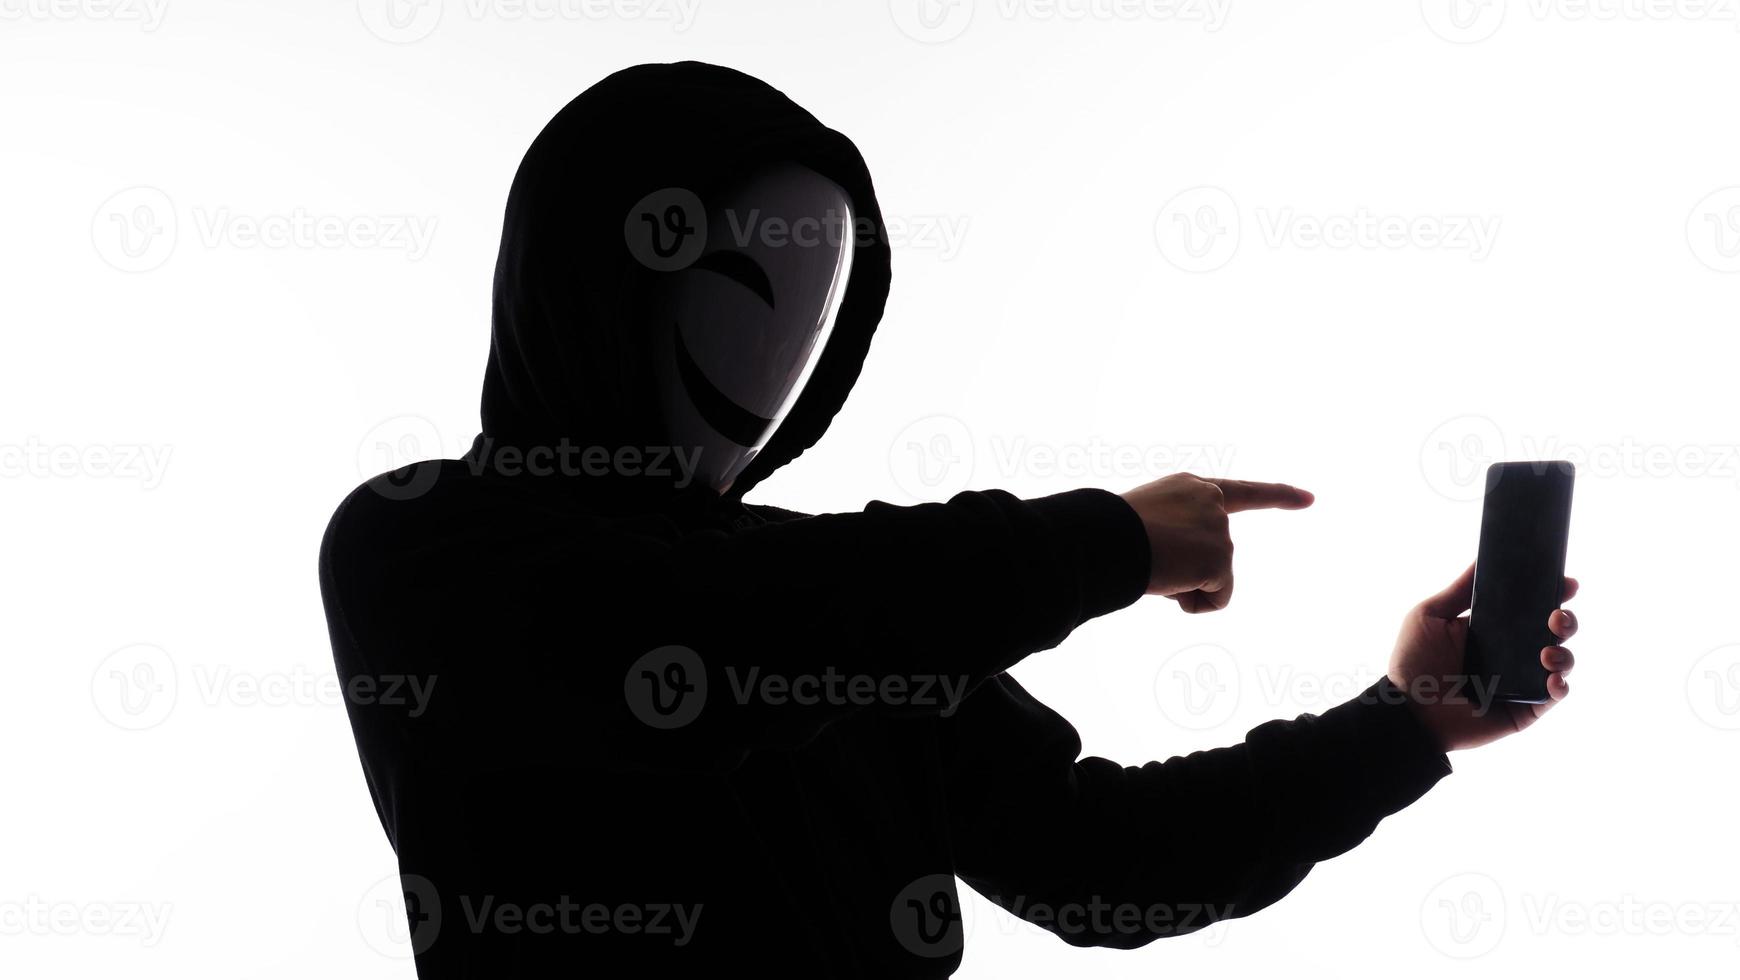 hacker anoniem en gezicht masker met smartphone in hand. Mens in zwart kap overhemd Holding en gebruik makend van mobiel telefoon Aan wit achtergrond. staan voor cyber misdrijf gegevens hacken of stelen persoonlijk gegevens concept foto